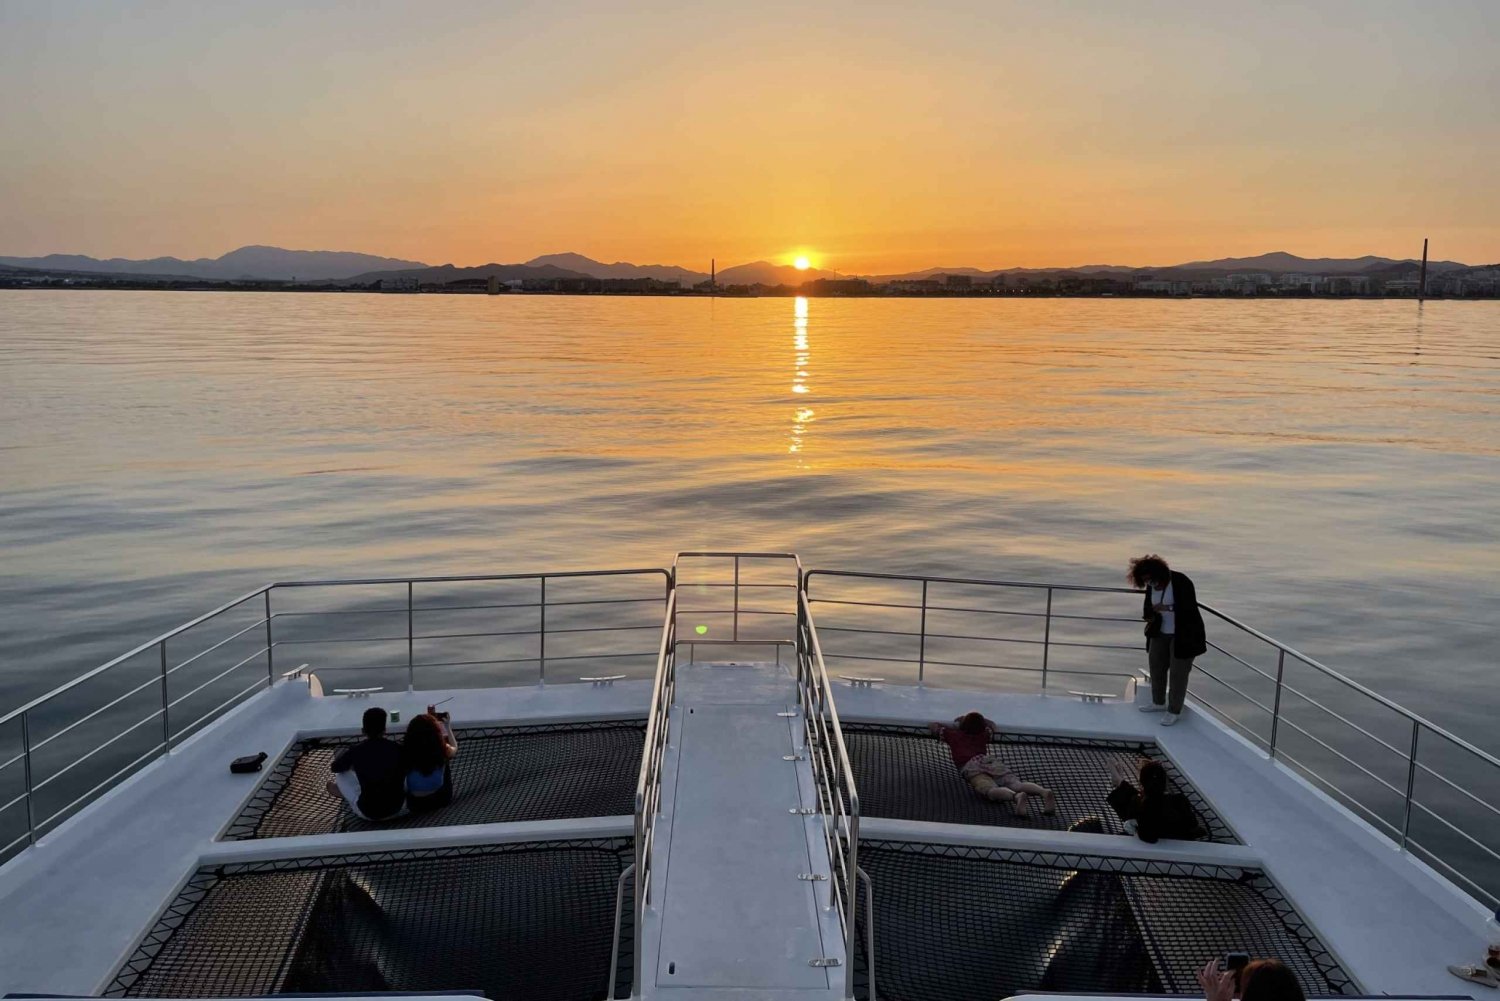 Malaga: gita in catamarano al tramonto